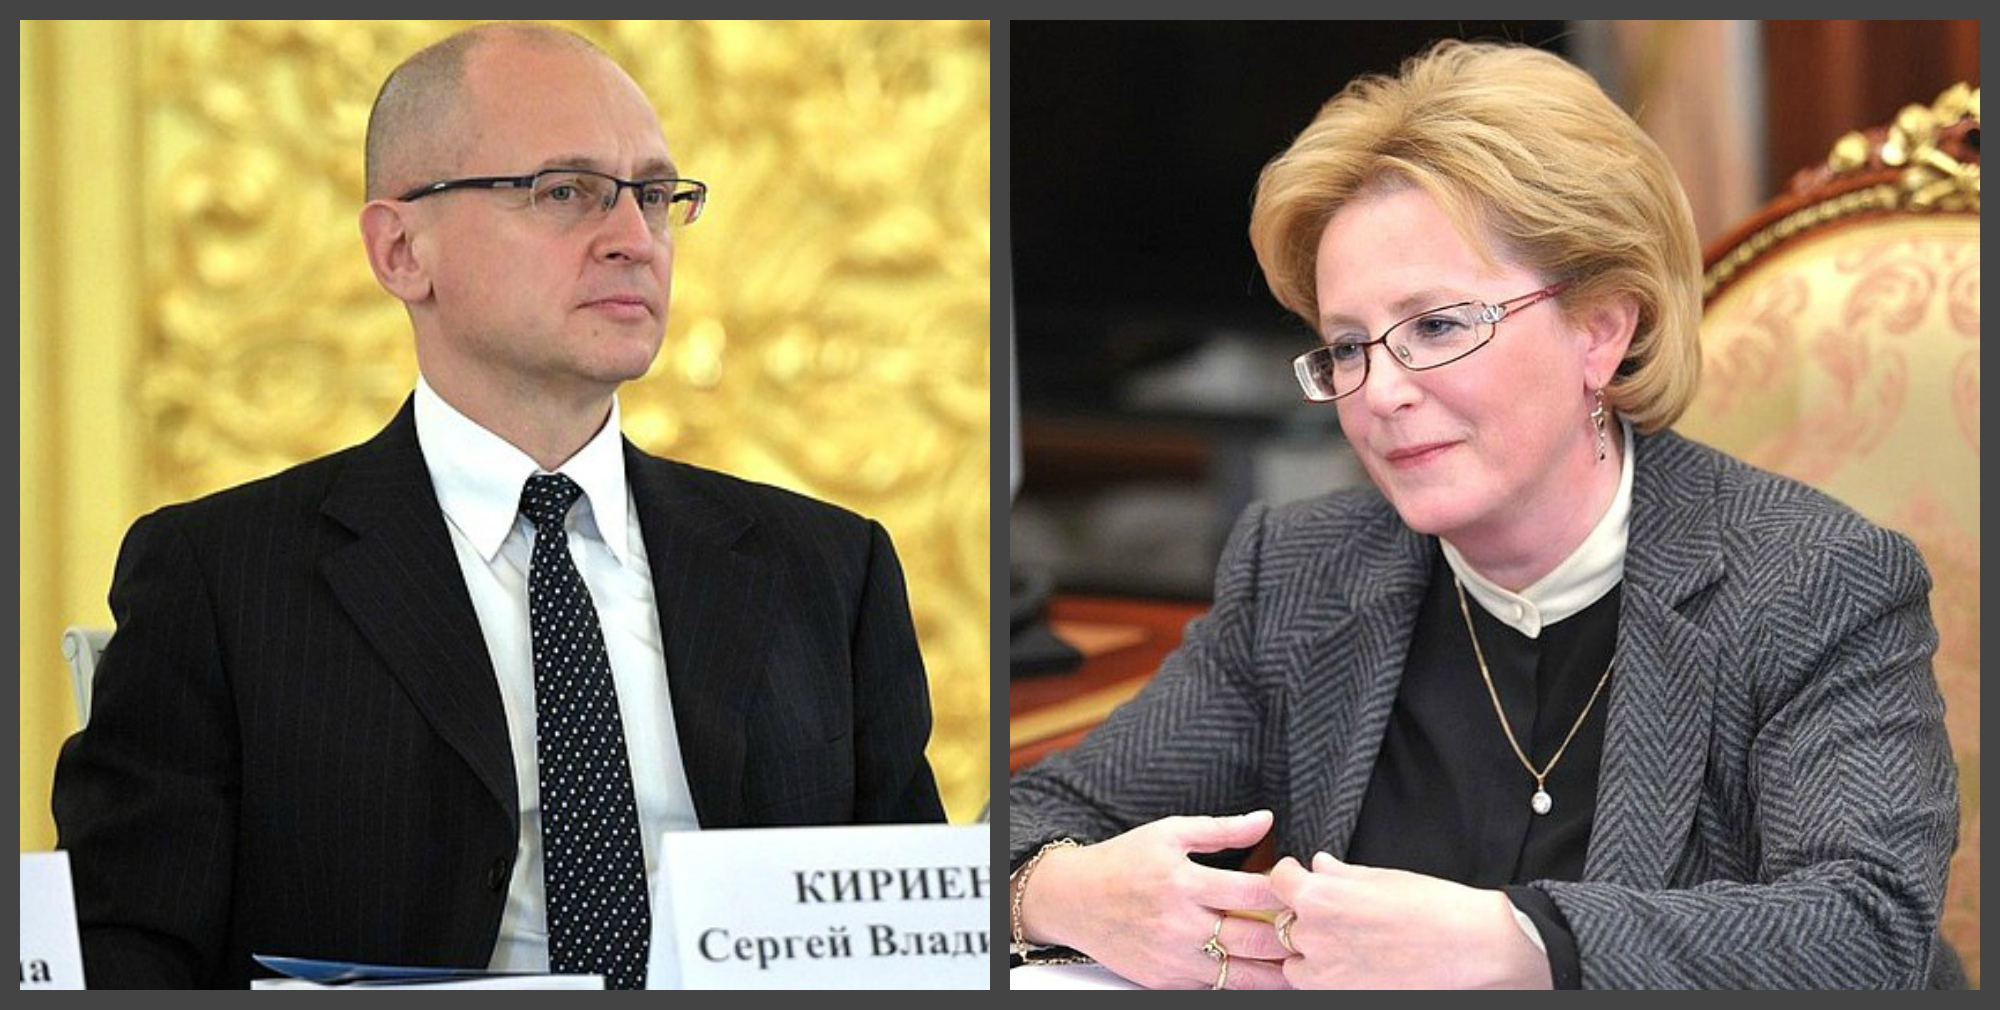 Перед визитом президента в Киров приедут высокопоставленные чиновники